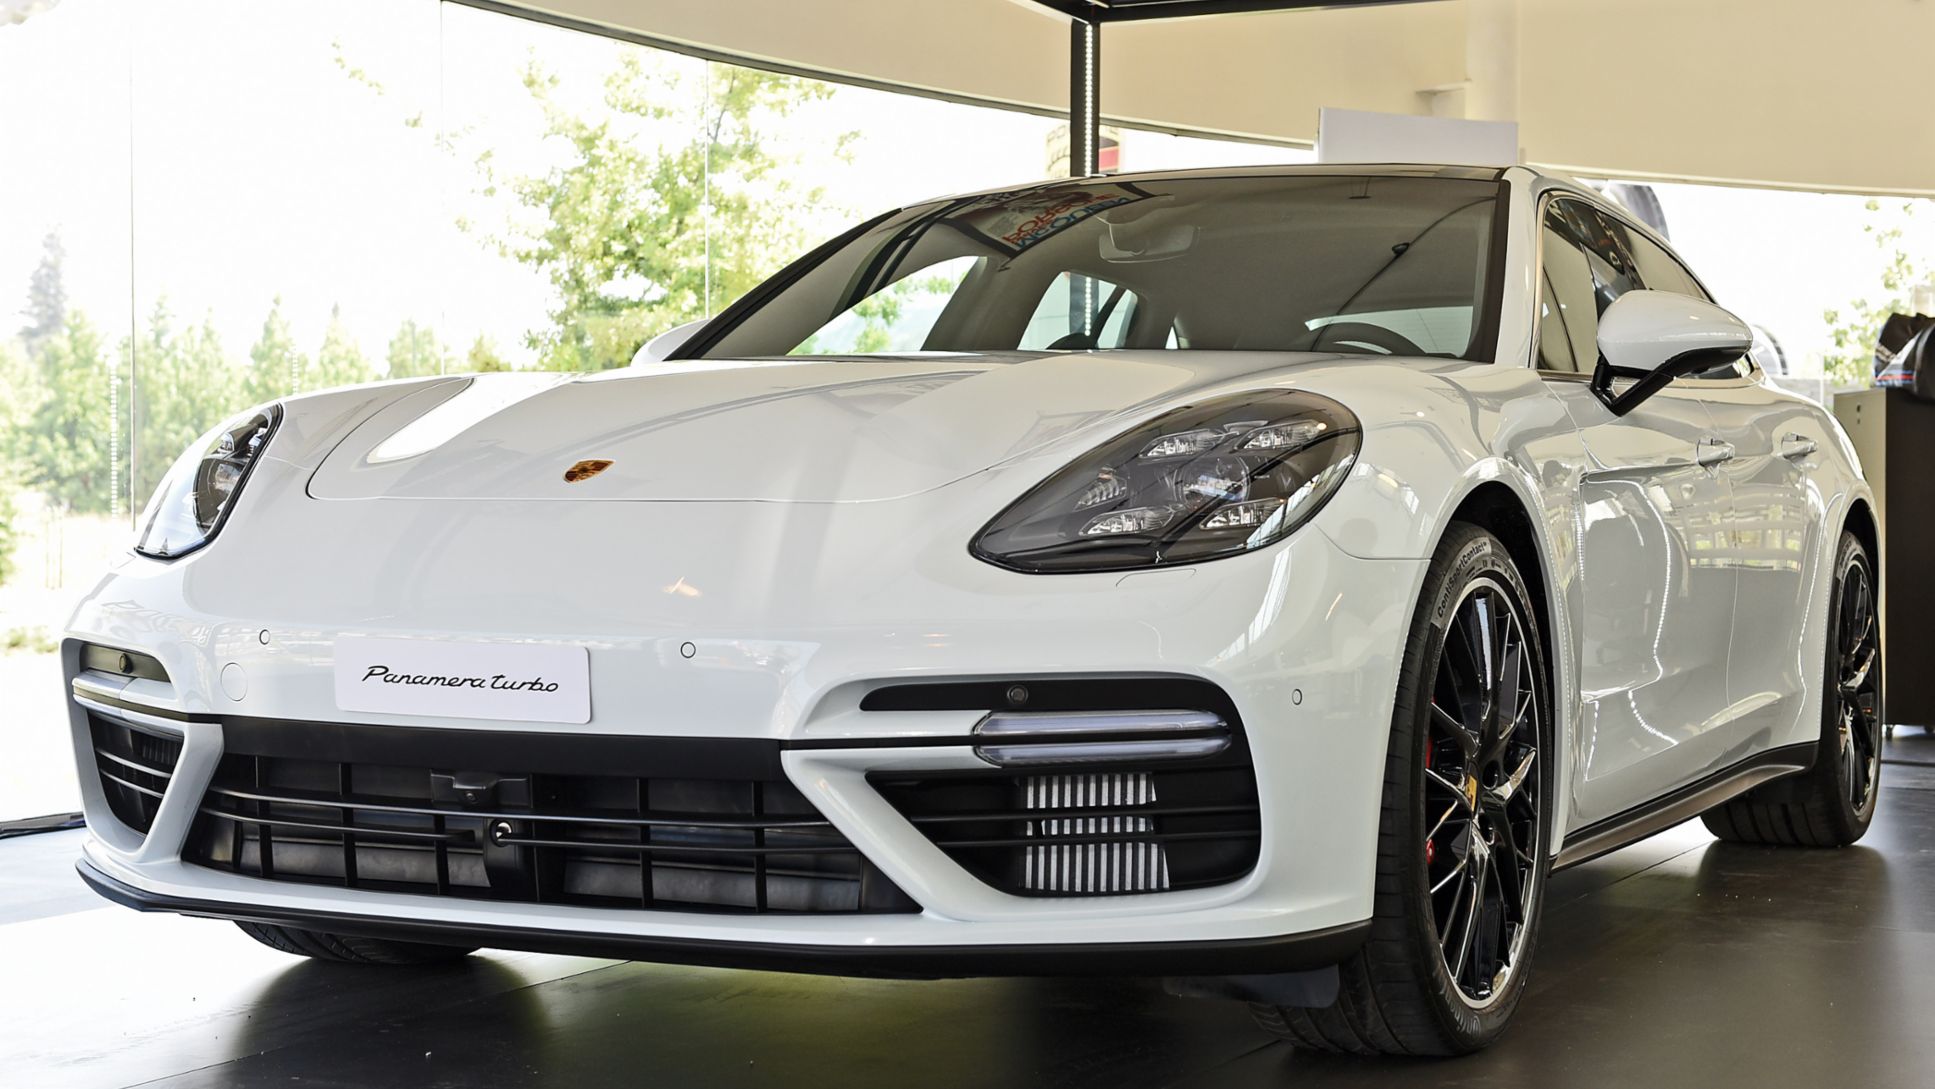 Porsche presenta en Chile el nuevo Panamera Turbo Sport Turismo - Con asientos para cinco pasajeros, llega a ampliar la oferta de la gama Panamera